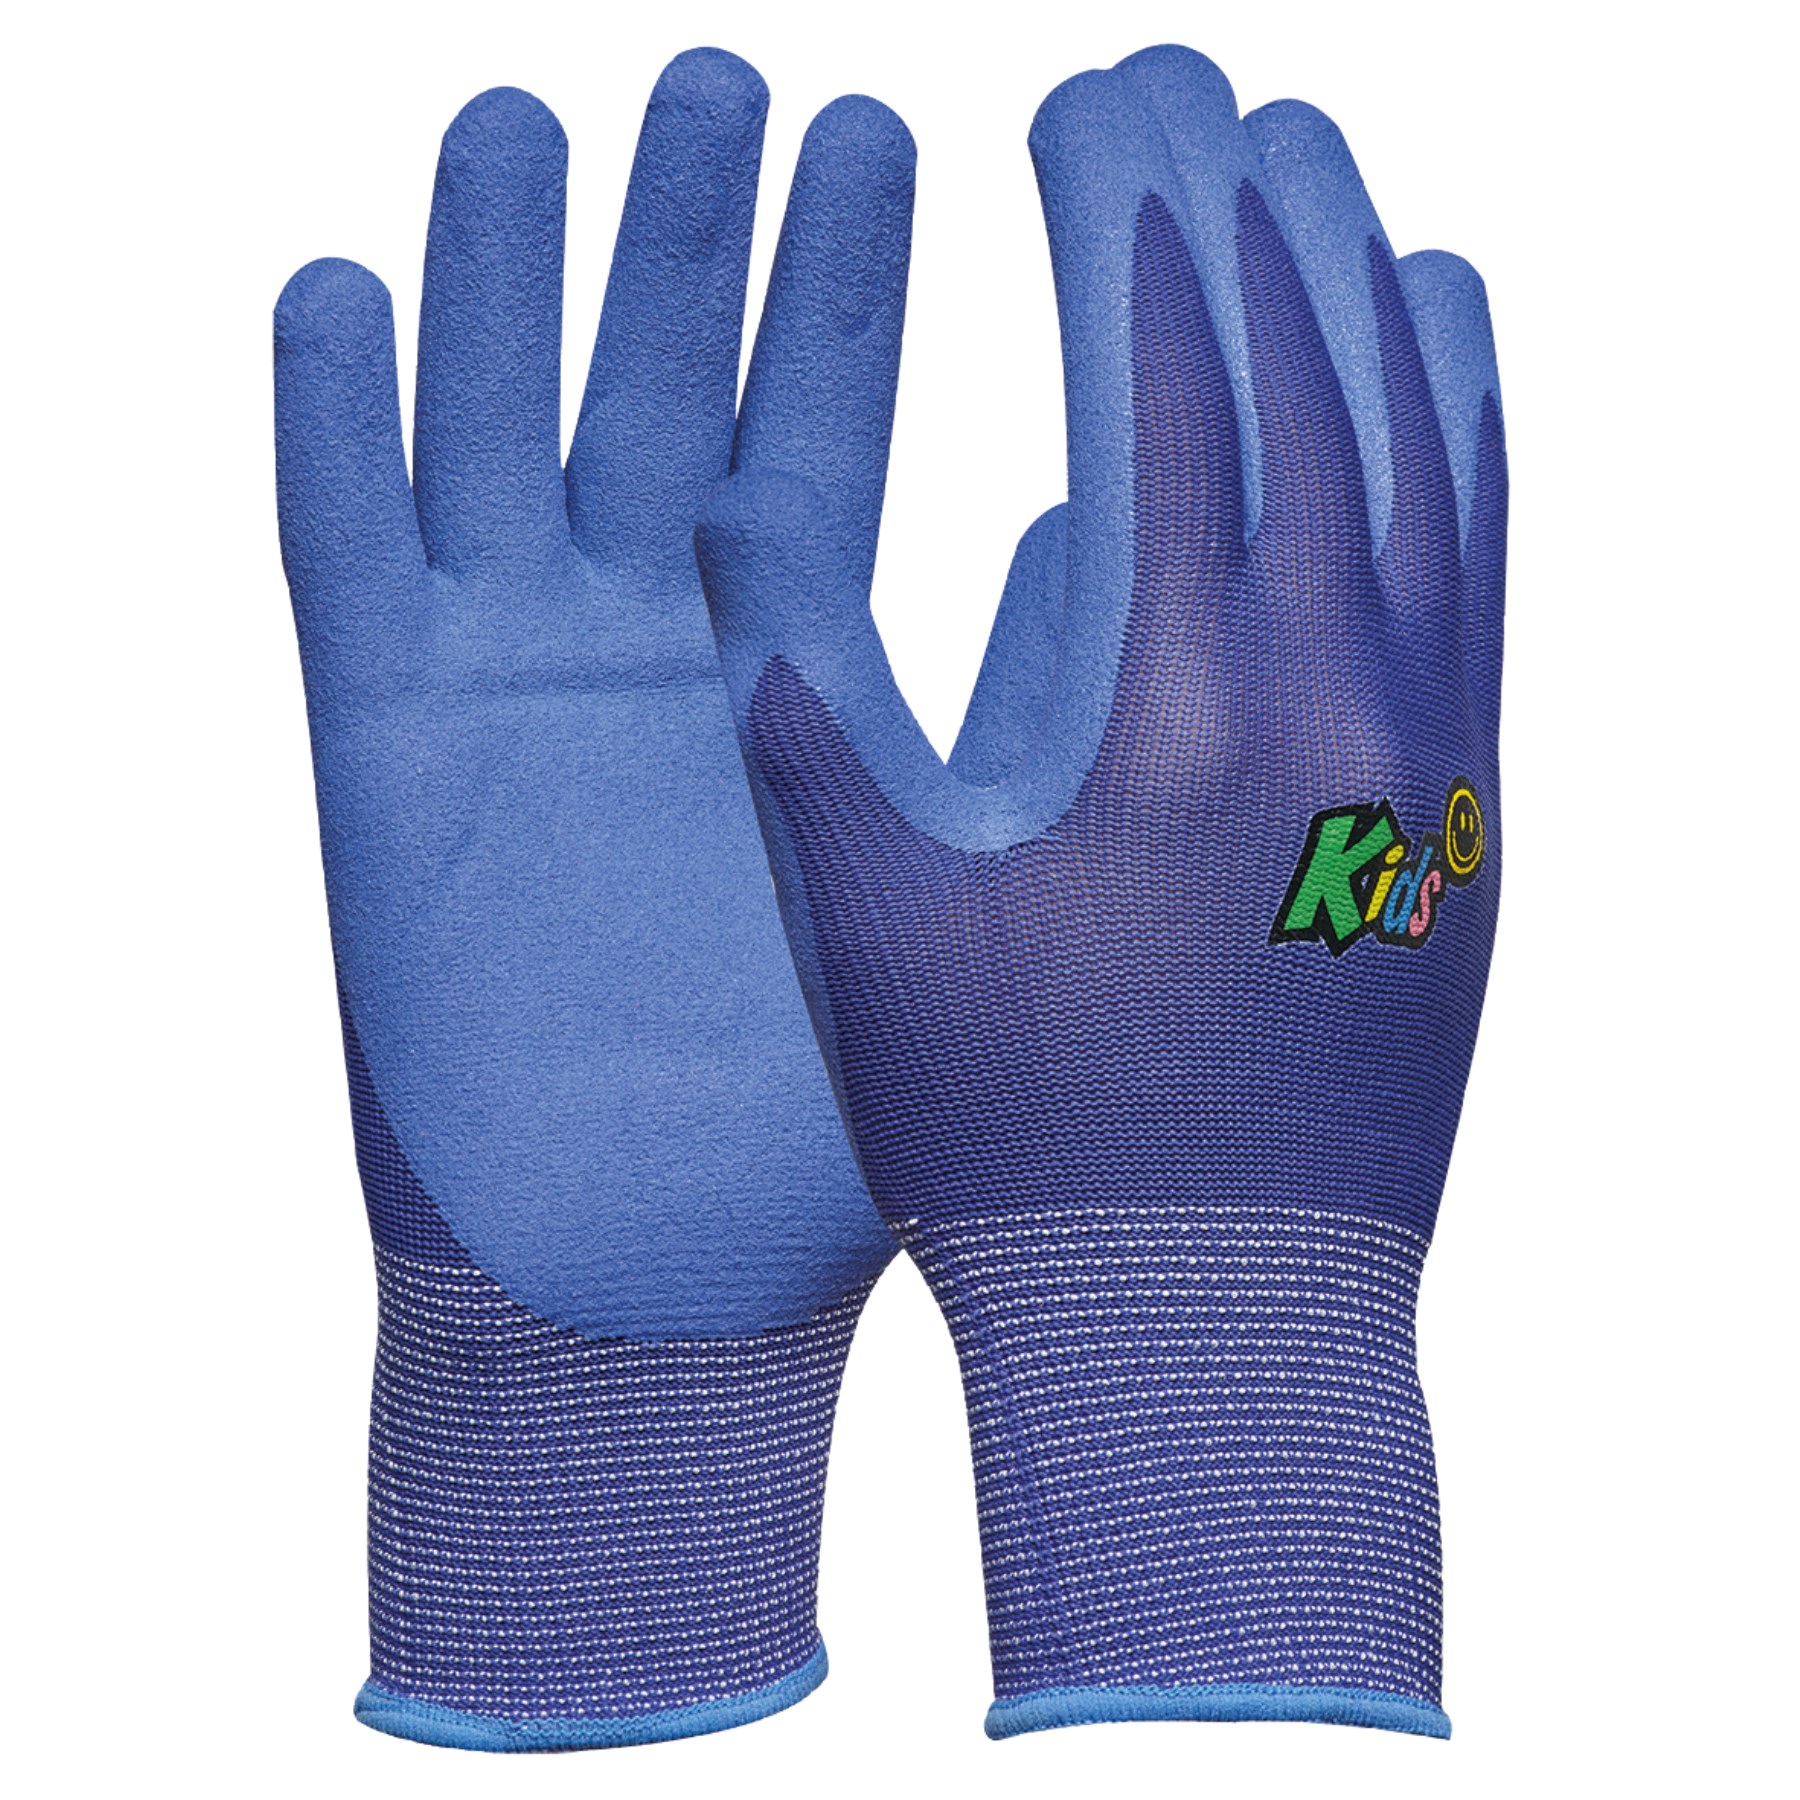 GEBOL 709705 dětské pracovní rukavice Kids 5-8 let modré, SB